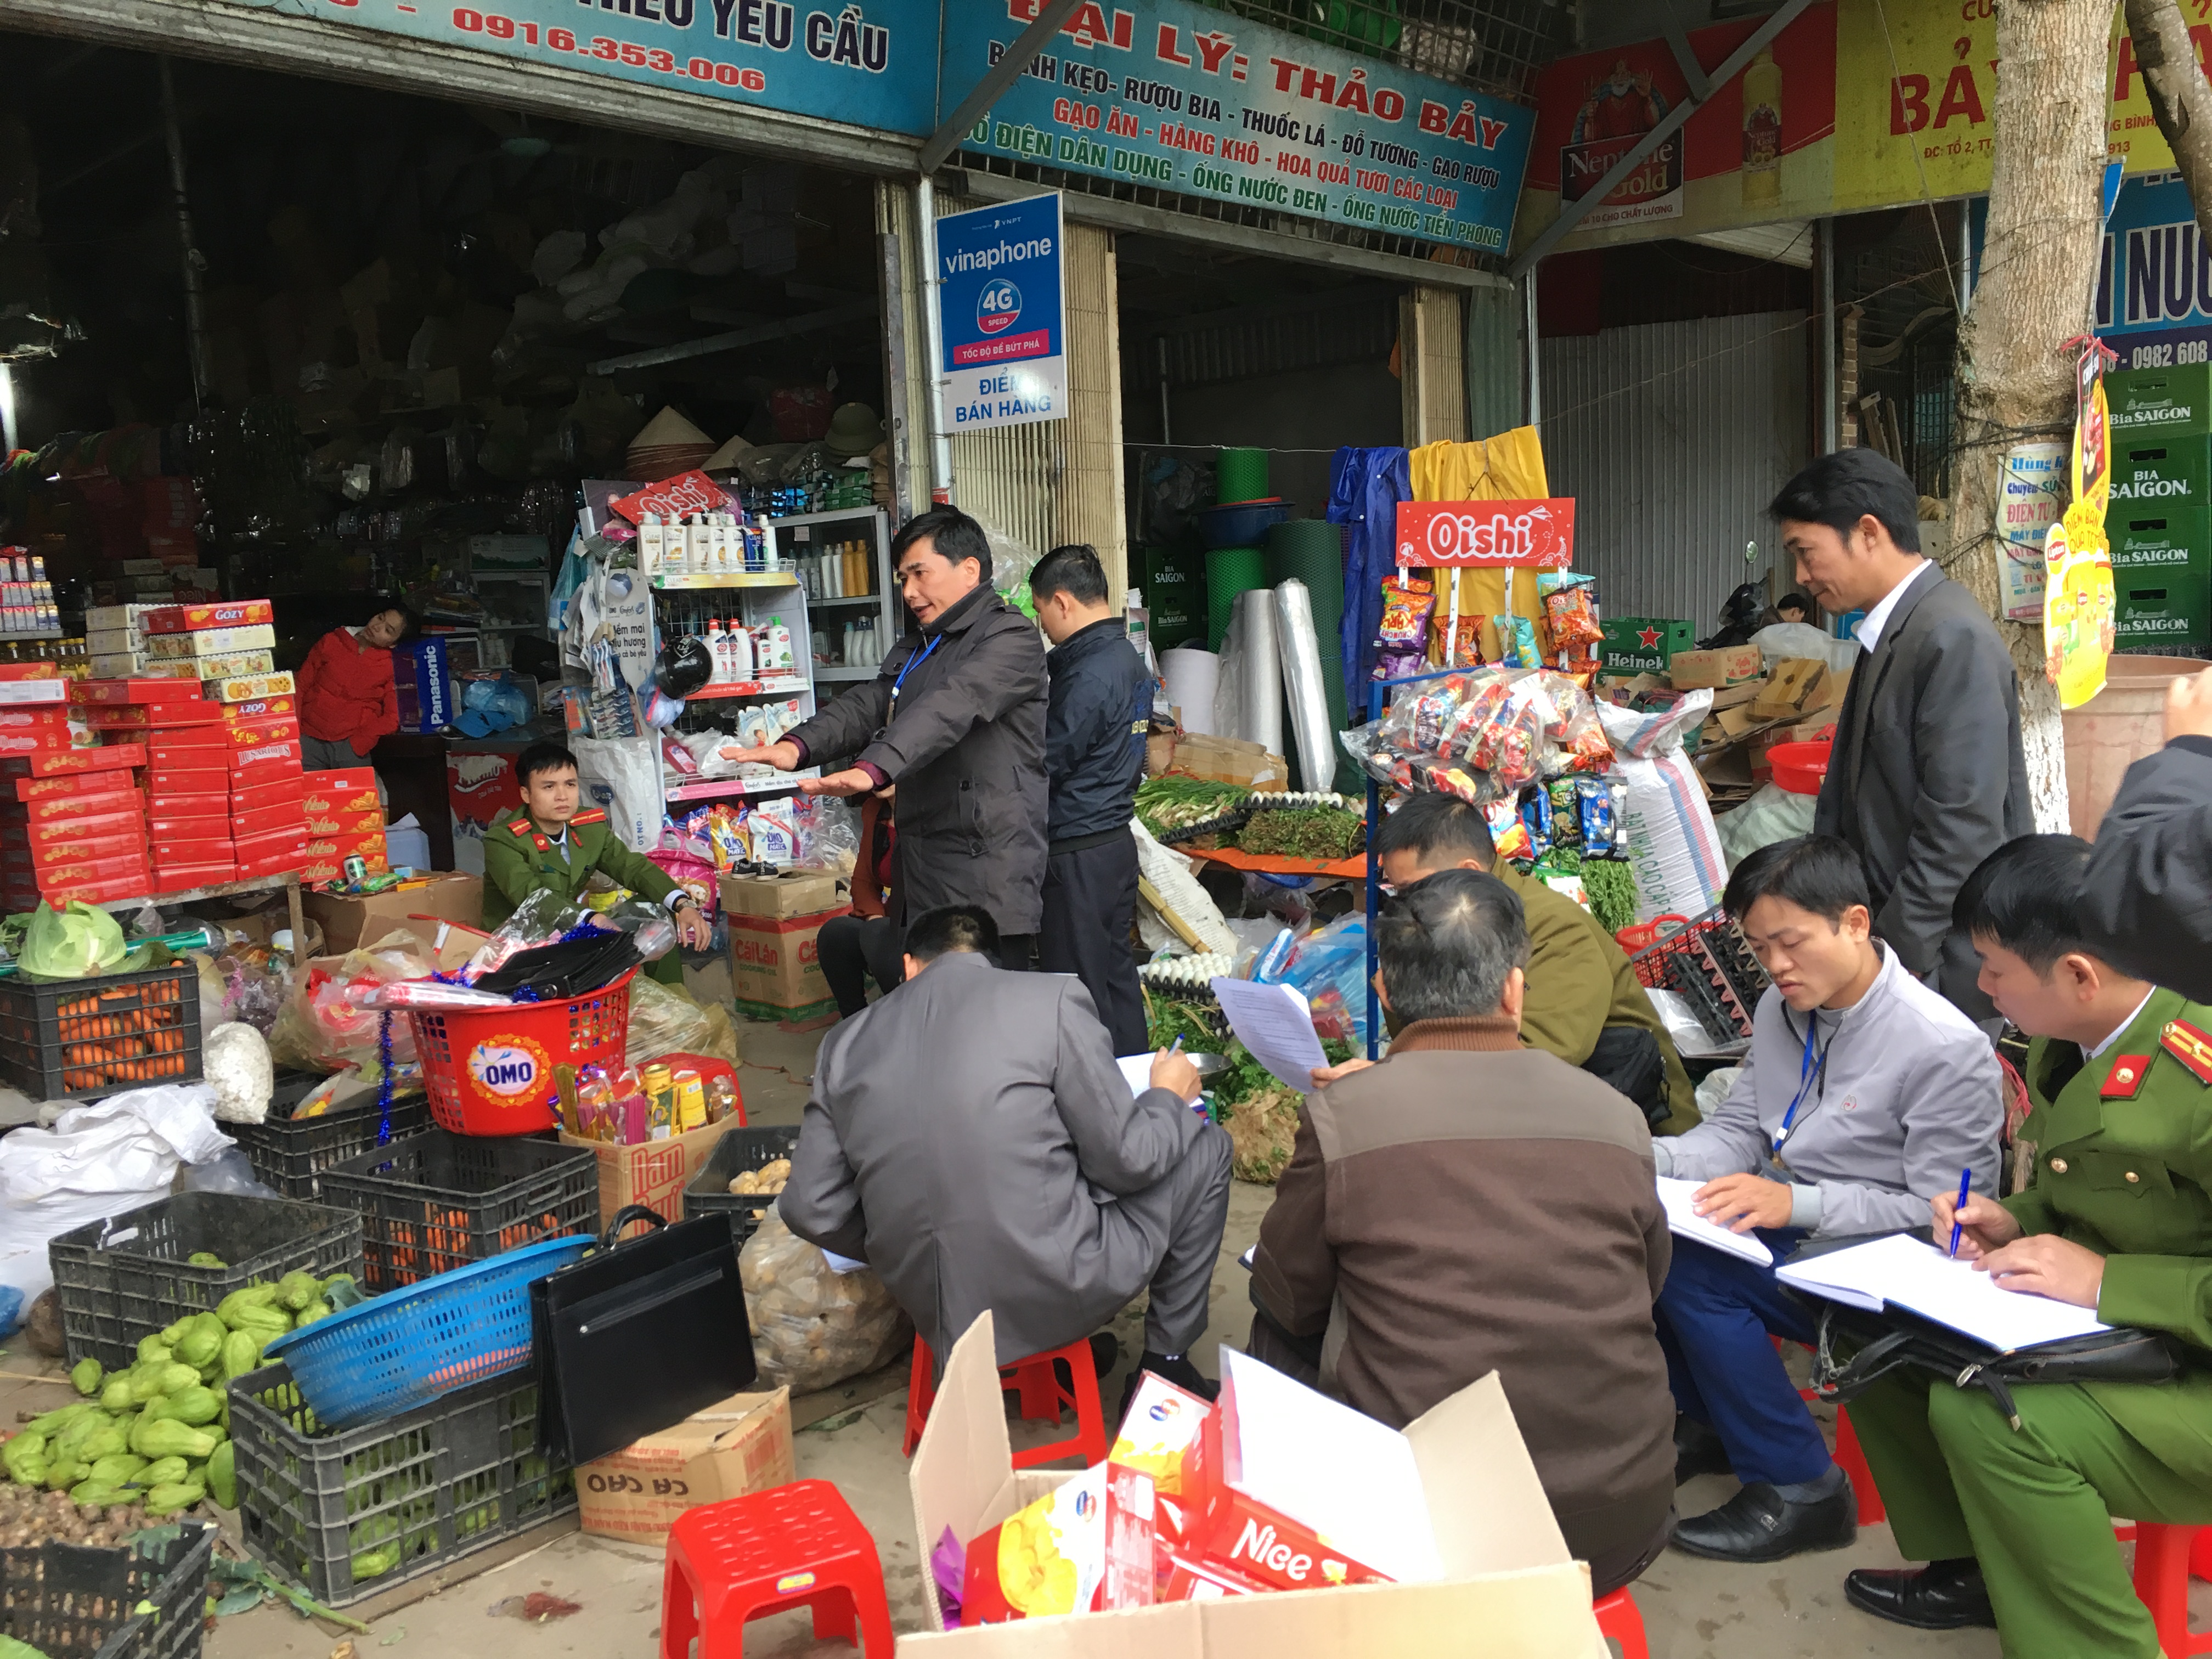 Đoàn liên ngành ATTP của tỉnh và các cơ quan chức năng của huyện Quang Bình kiểm tra  cơ sở kinh doanh thực phẩm